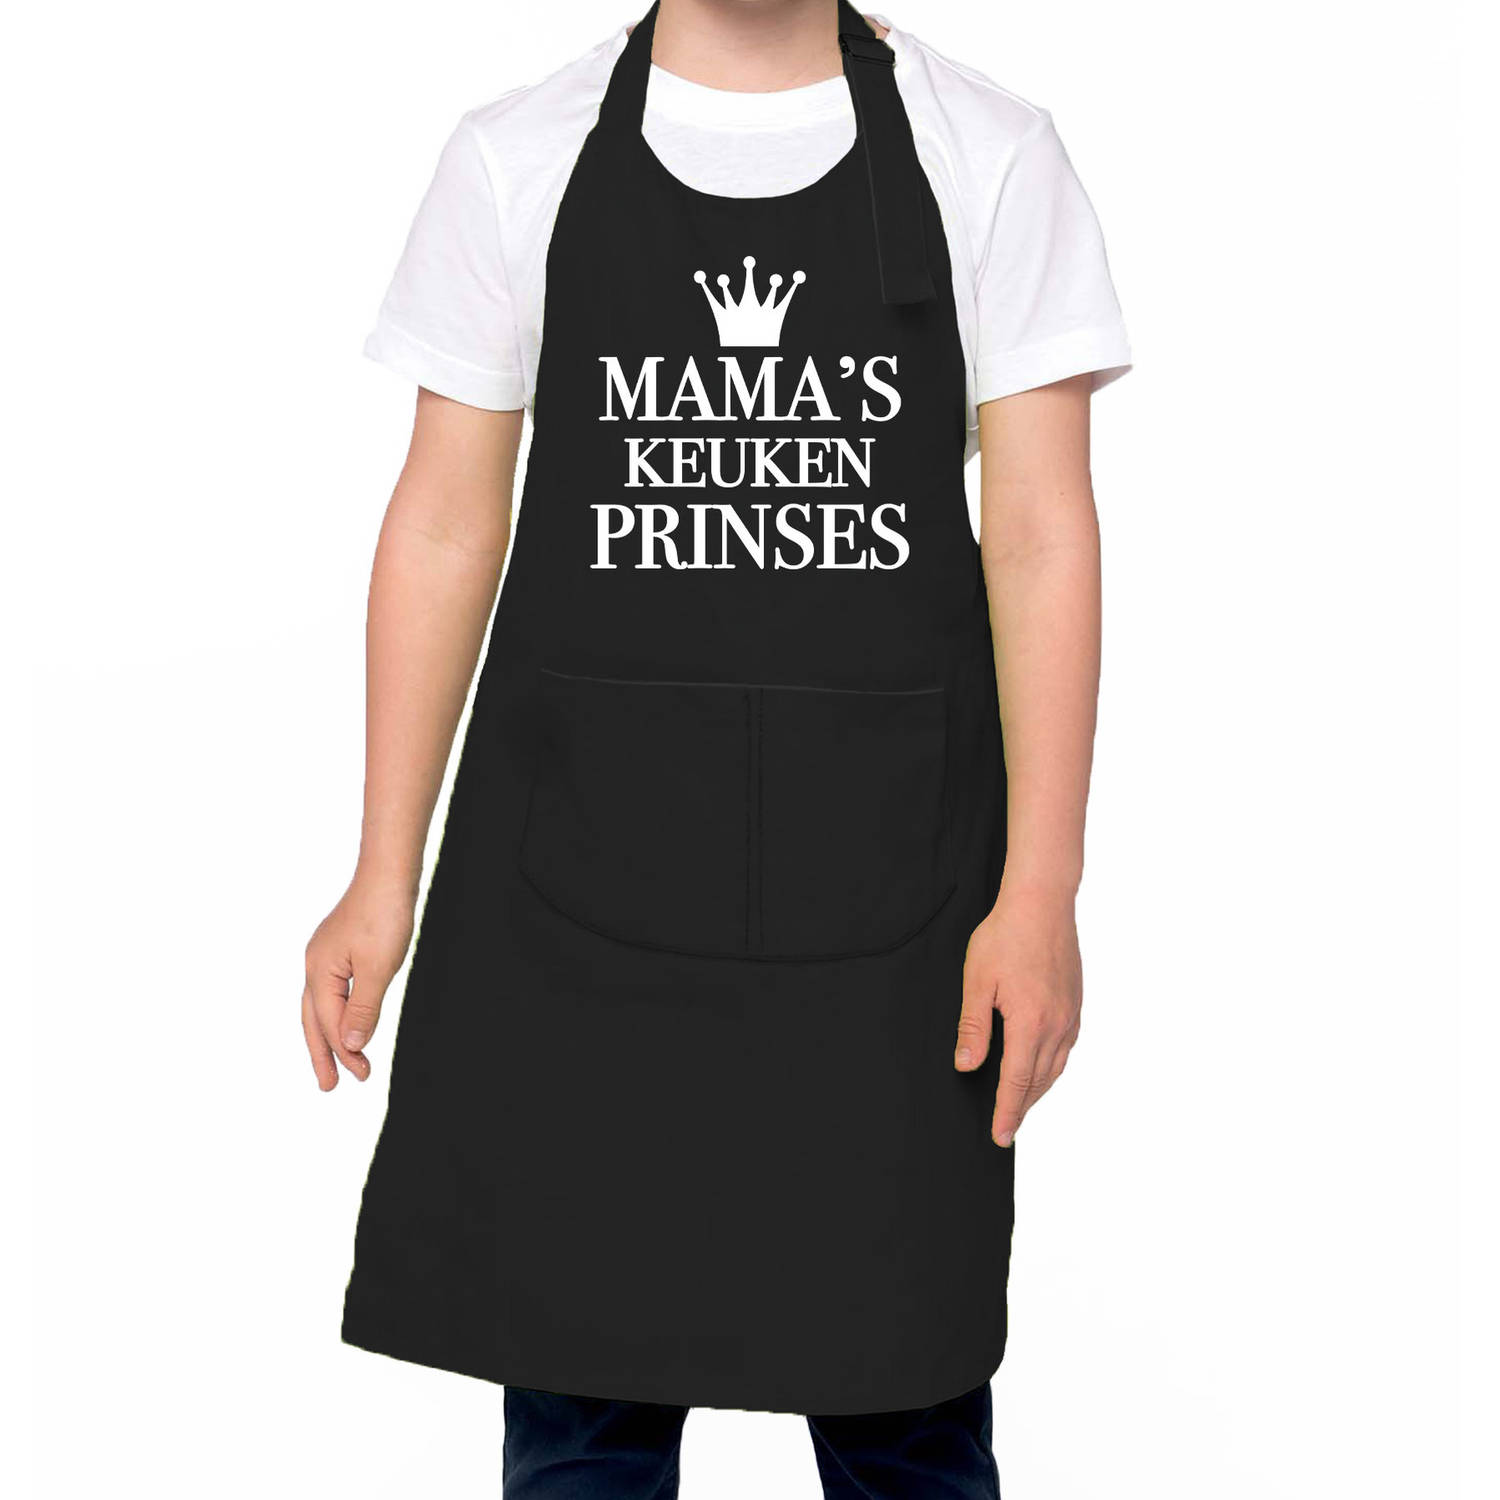 Mama S Keukenprinses Keukenschort Kinderen- Kinder Schort Zwart Voor Meisjes Feestschorten